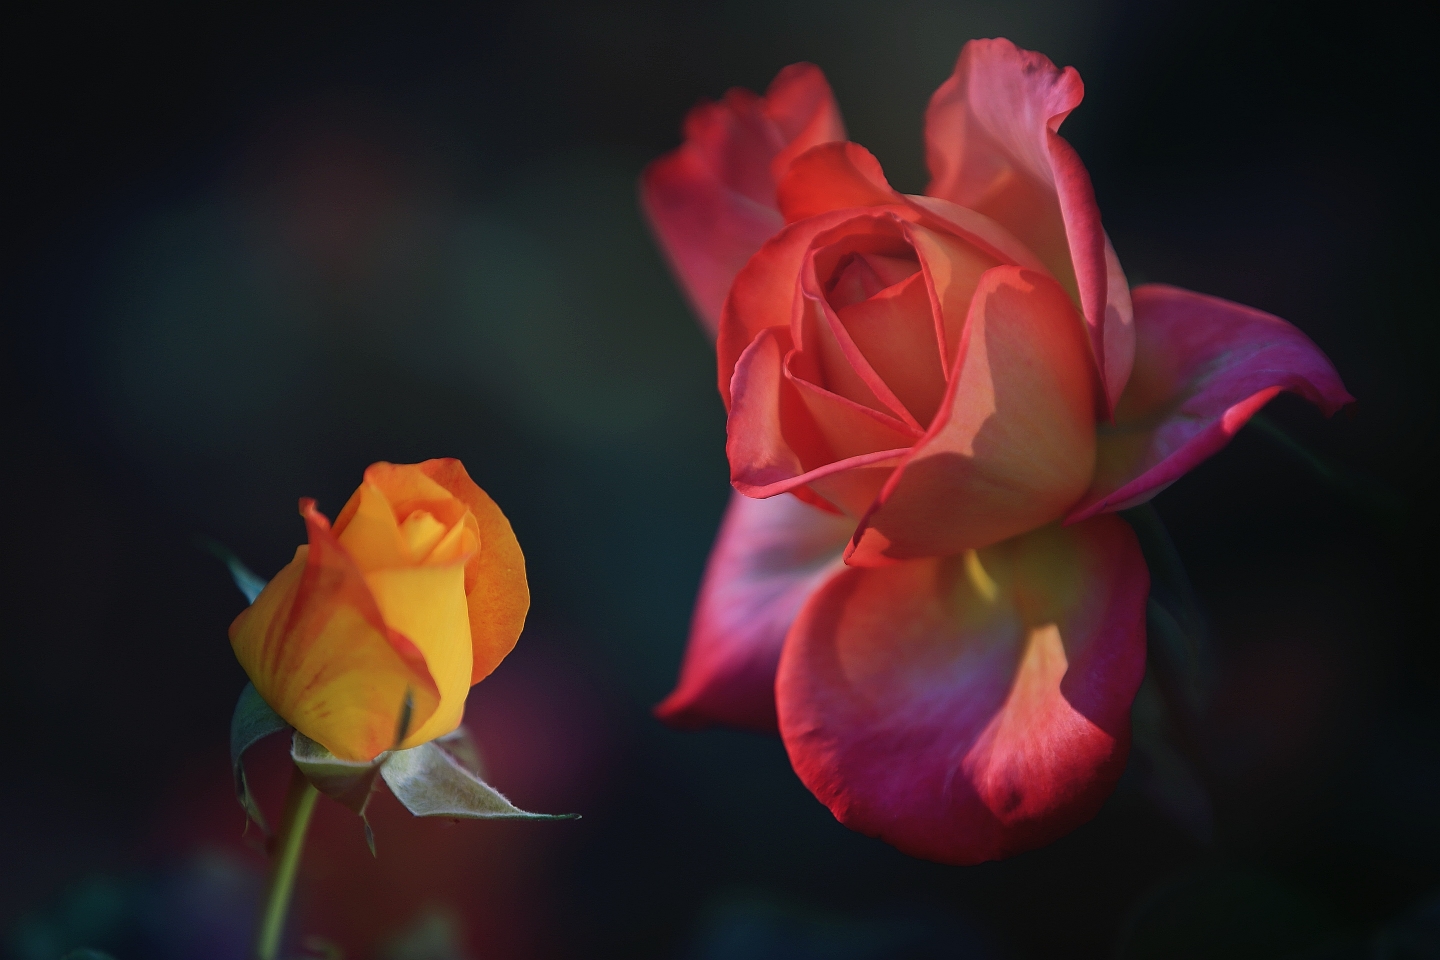 玫瑰花的色彩繁多而艳丽,红得似火,白得似雪,黄得似金,粉的似霞